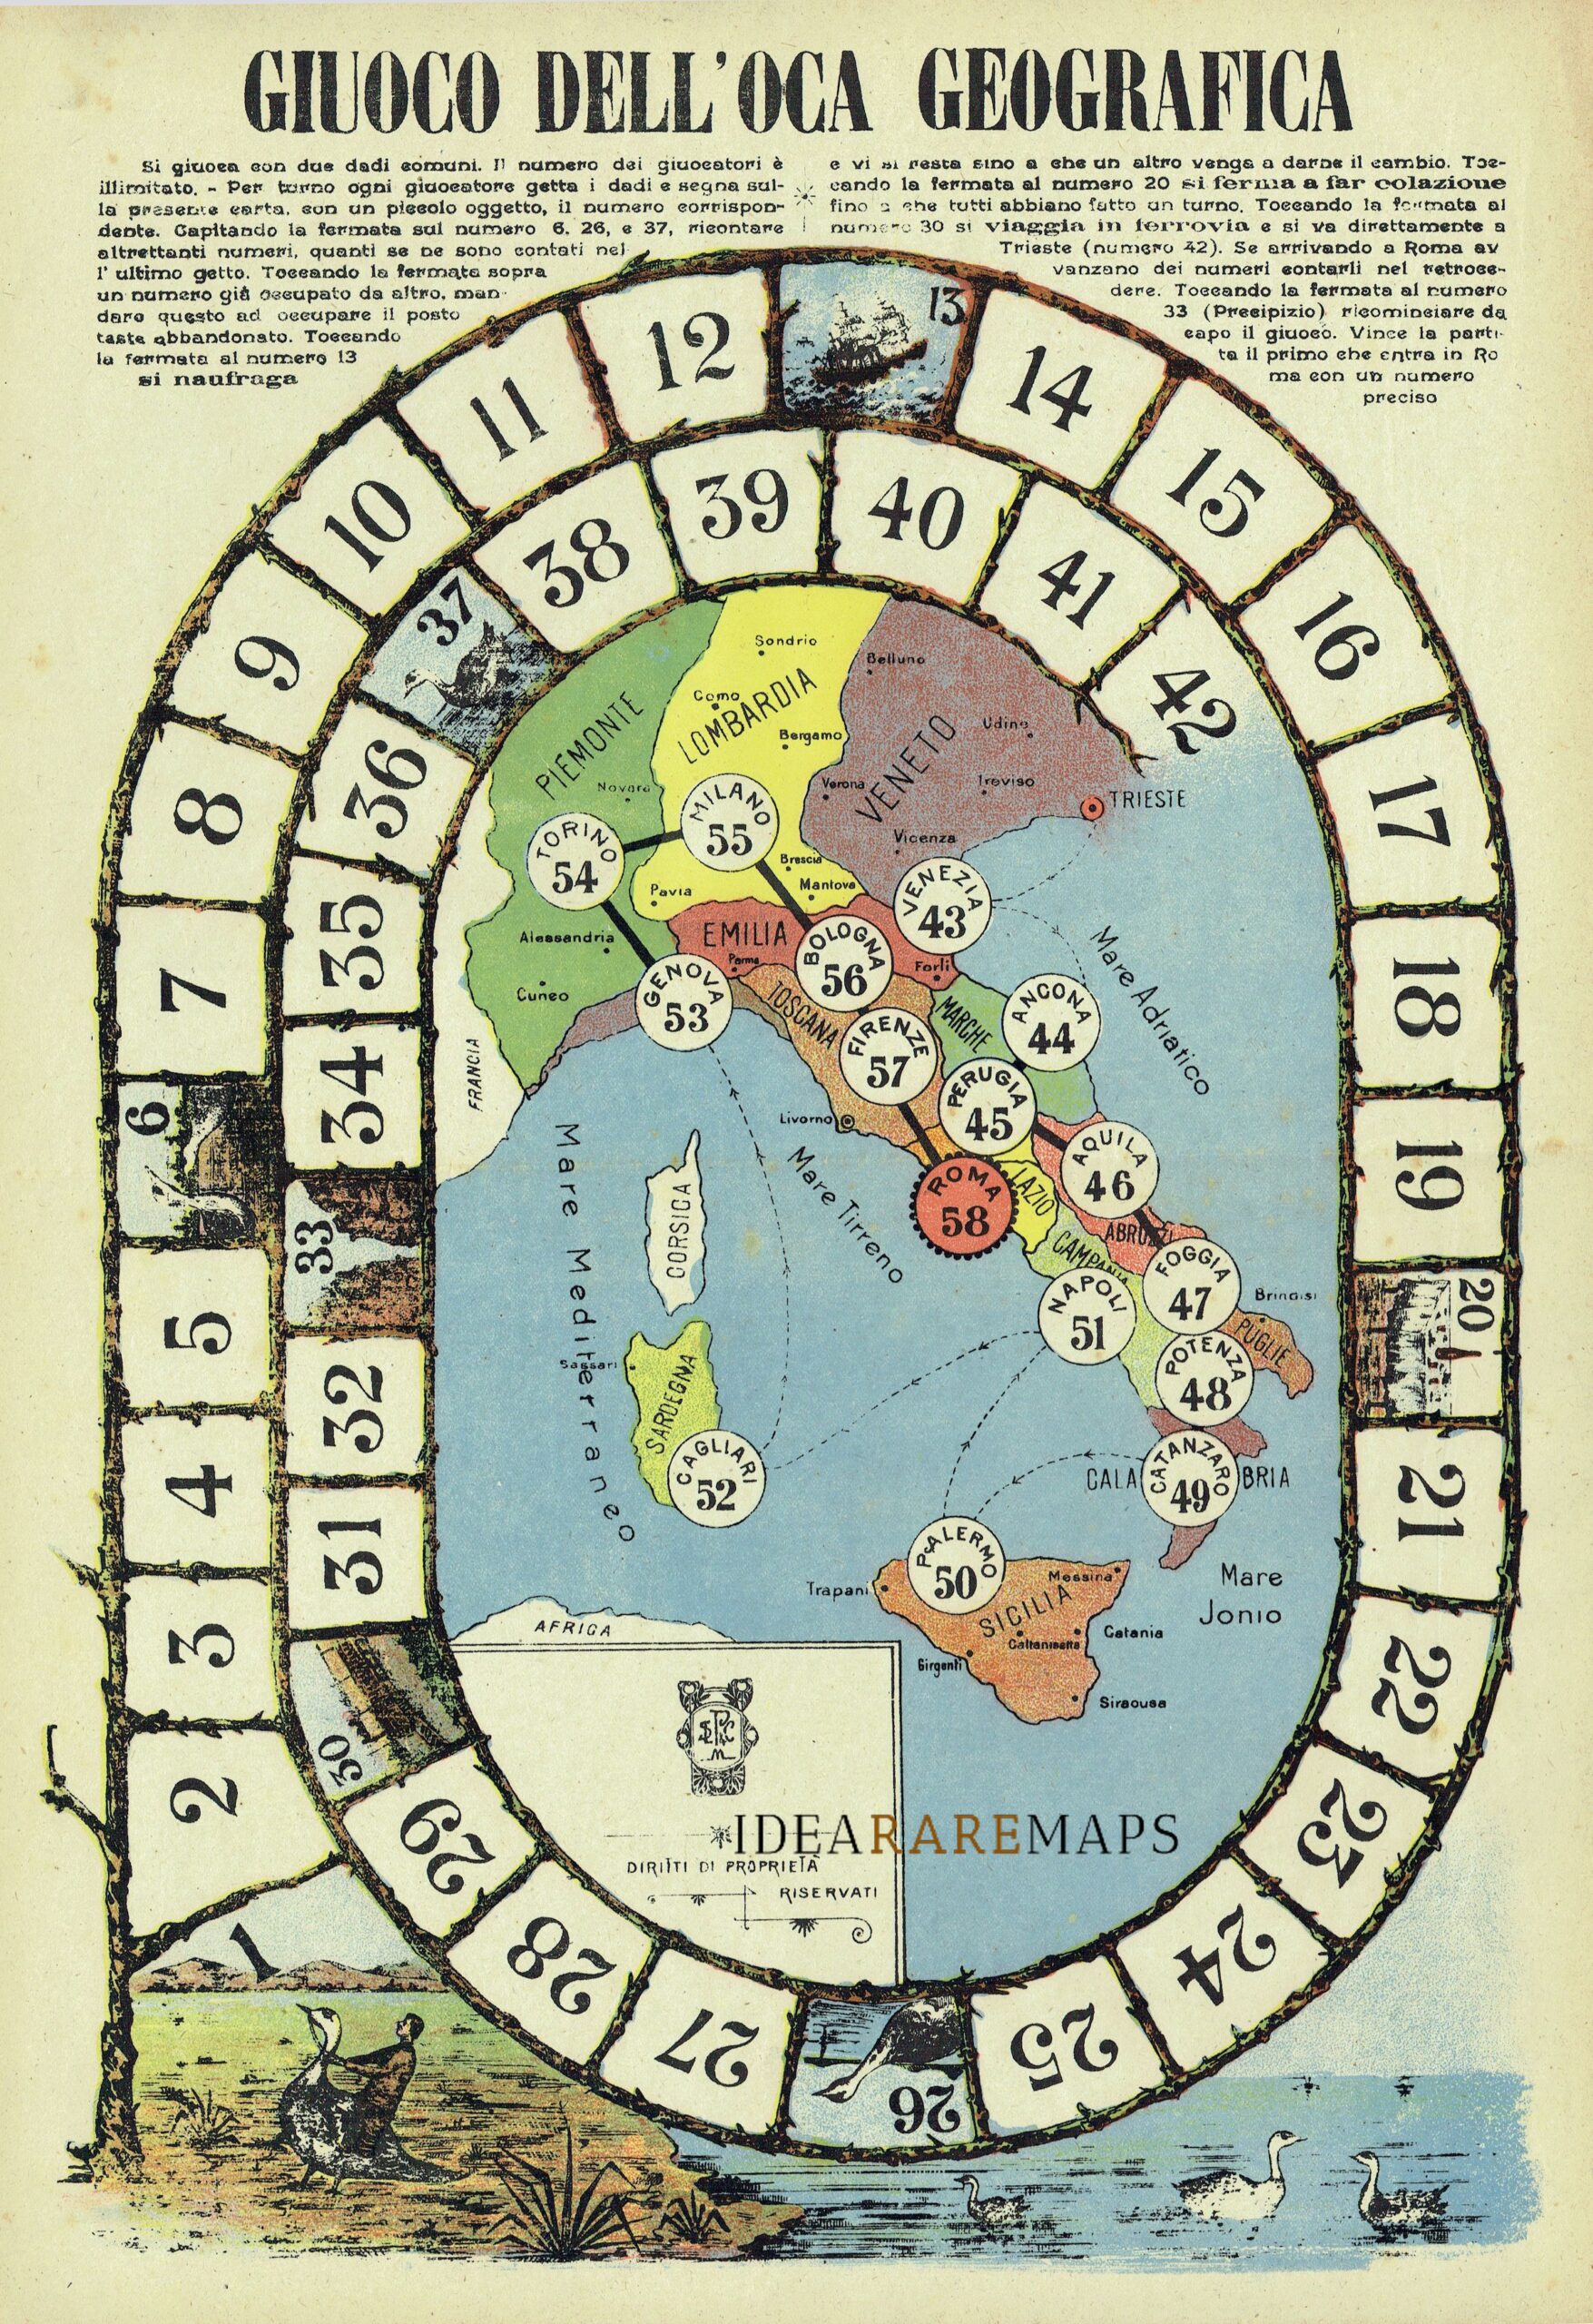 Italia] Giuoco Dell'Oca Geografica - Idea Rare Maps